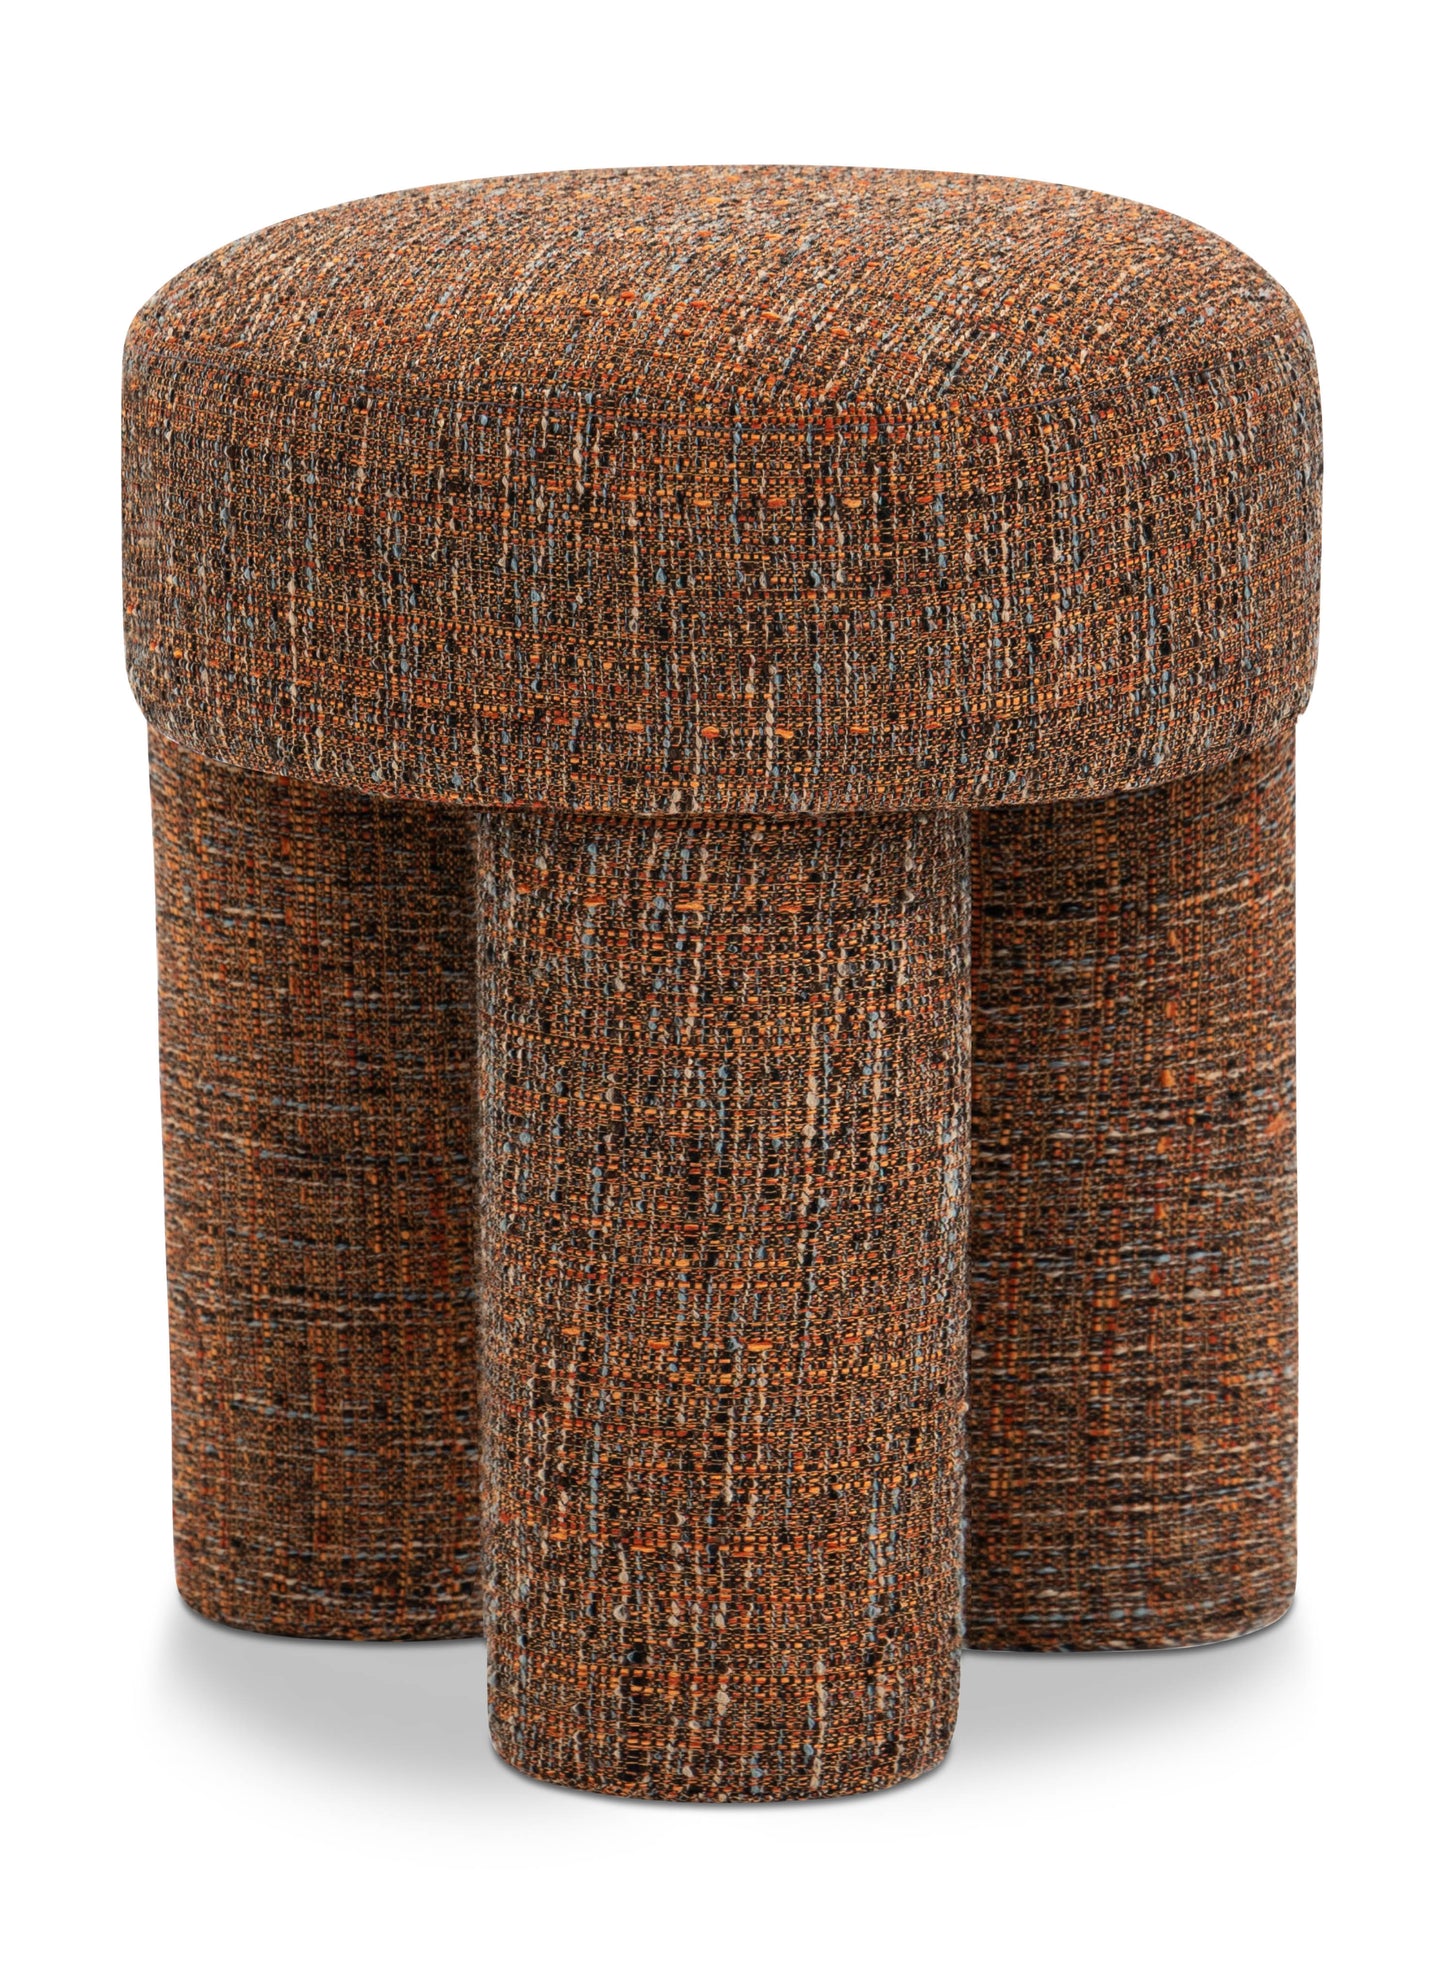 ottoman/stool